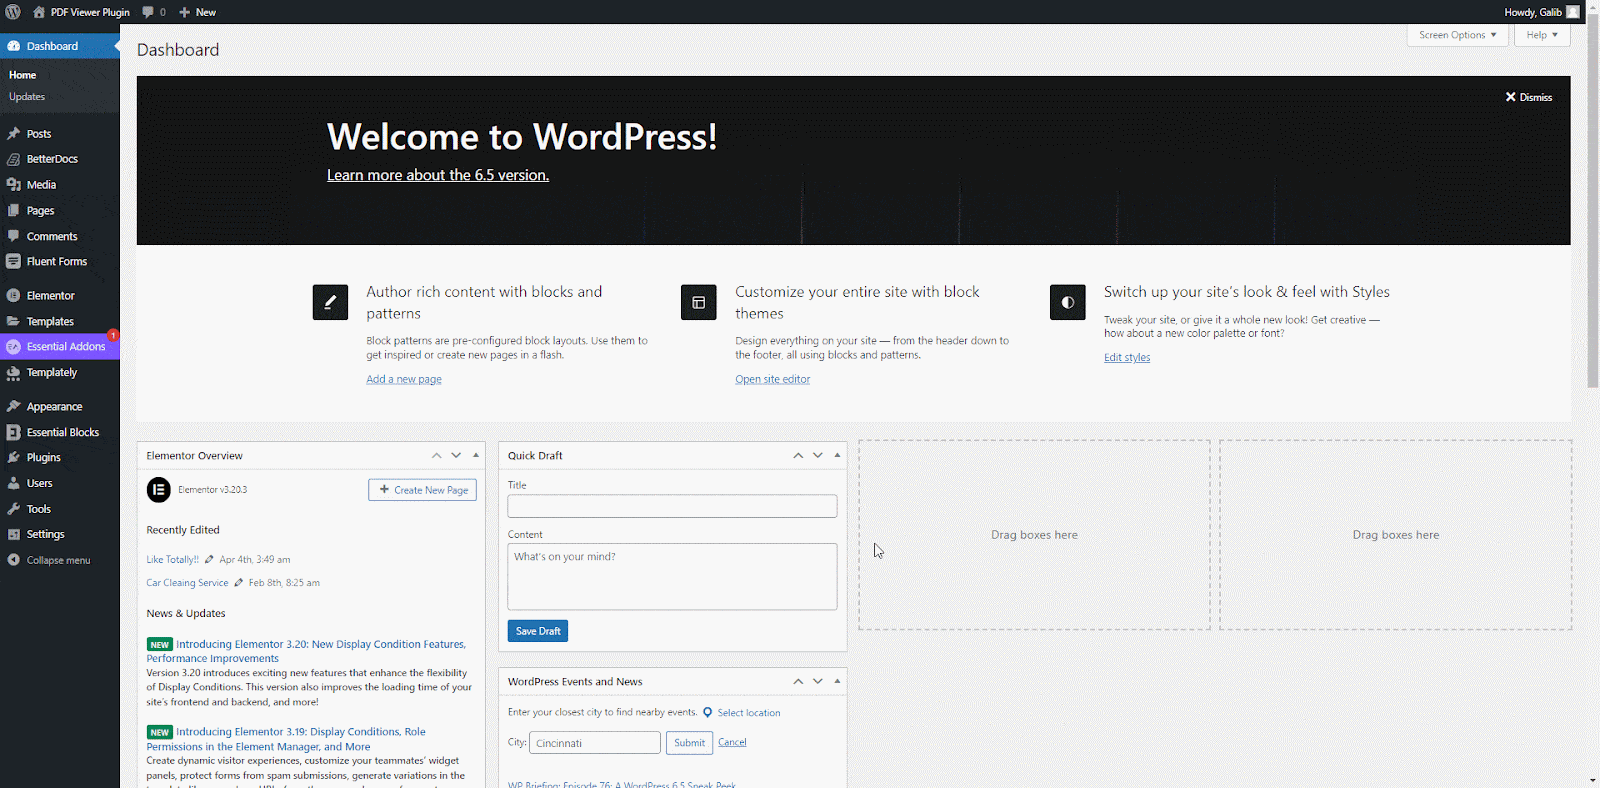 WordPress PDF Viewer Plugin